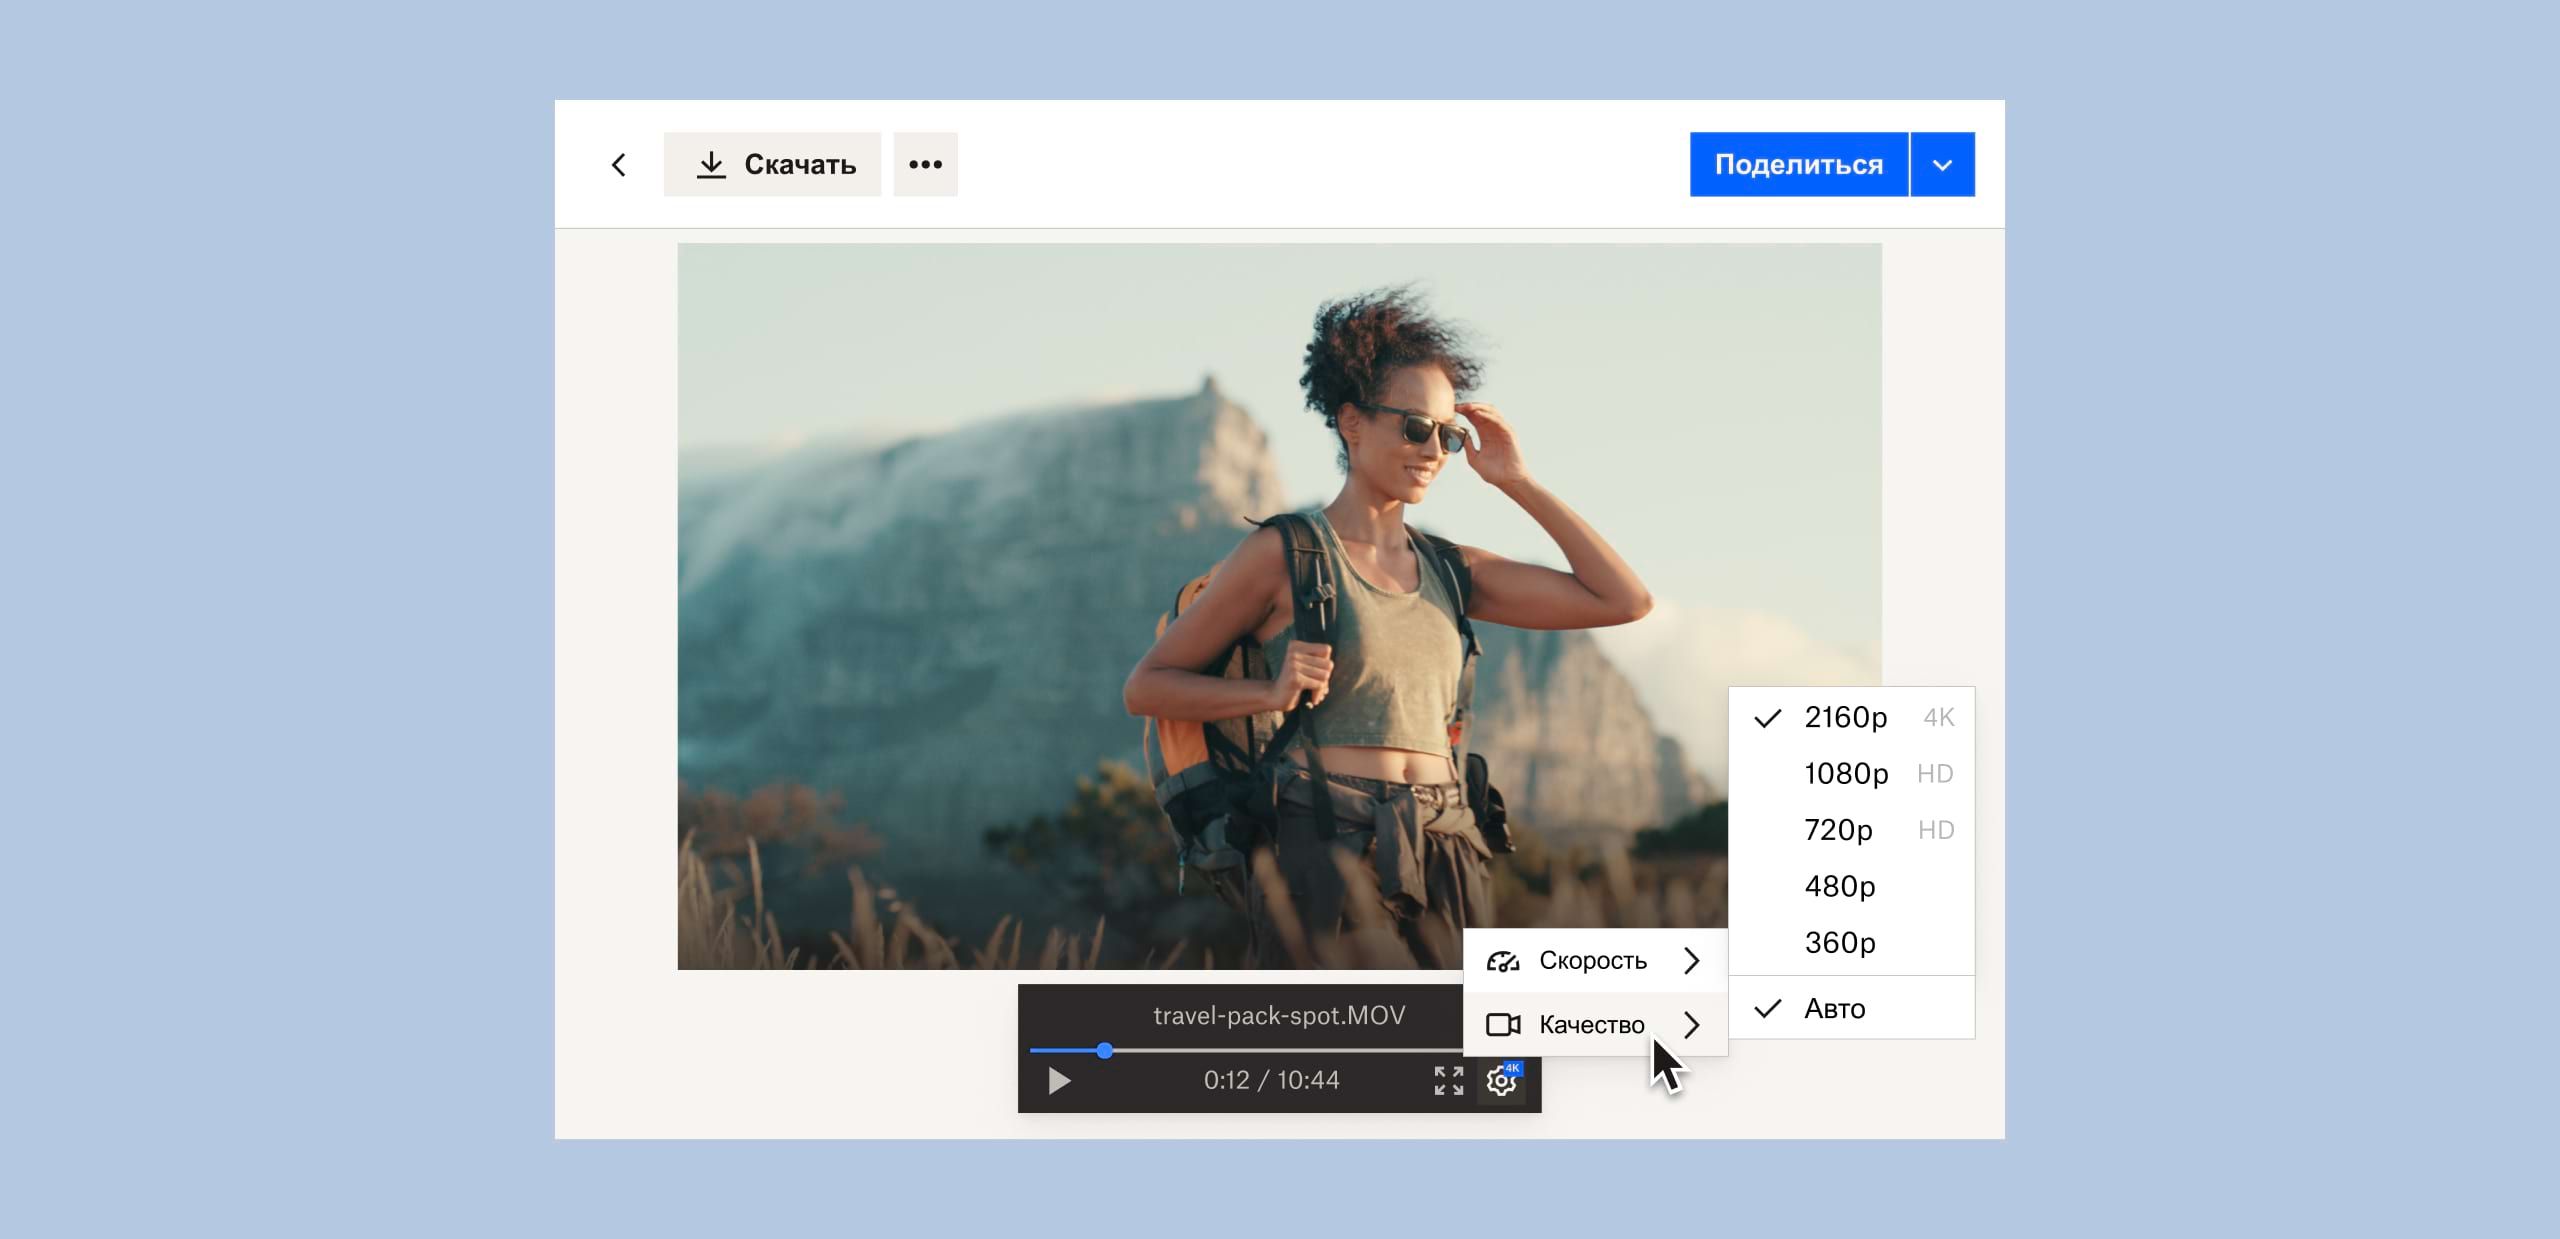 Пользователь изменяет качество изображения видеофайла, сохраненного в Dropbox